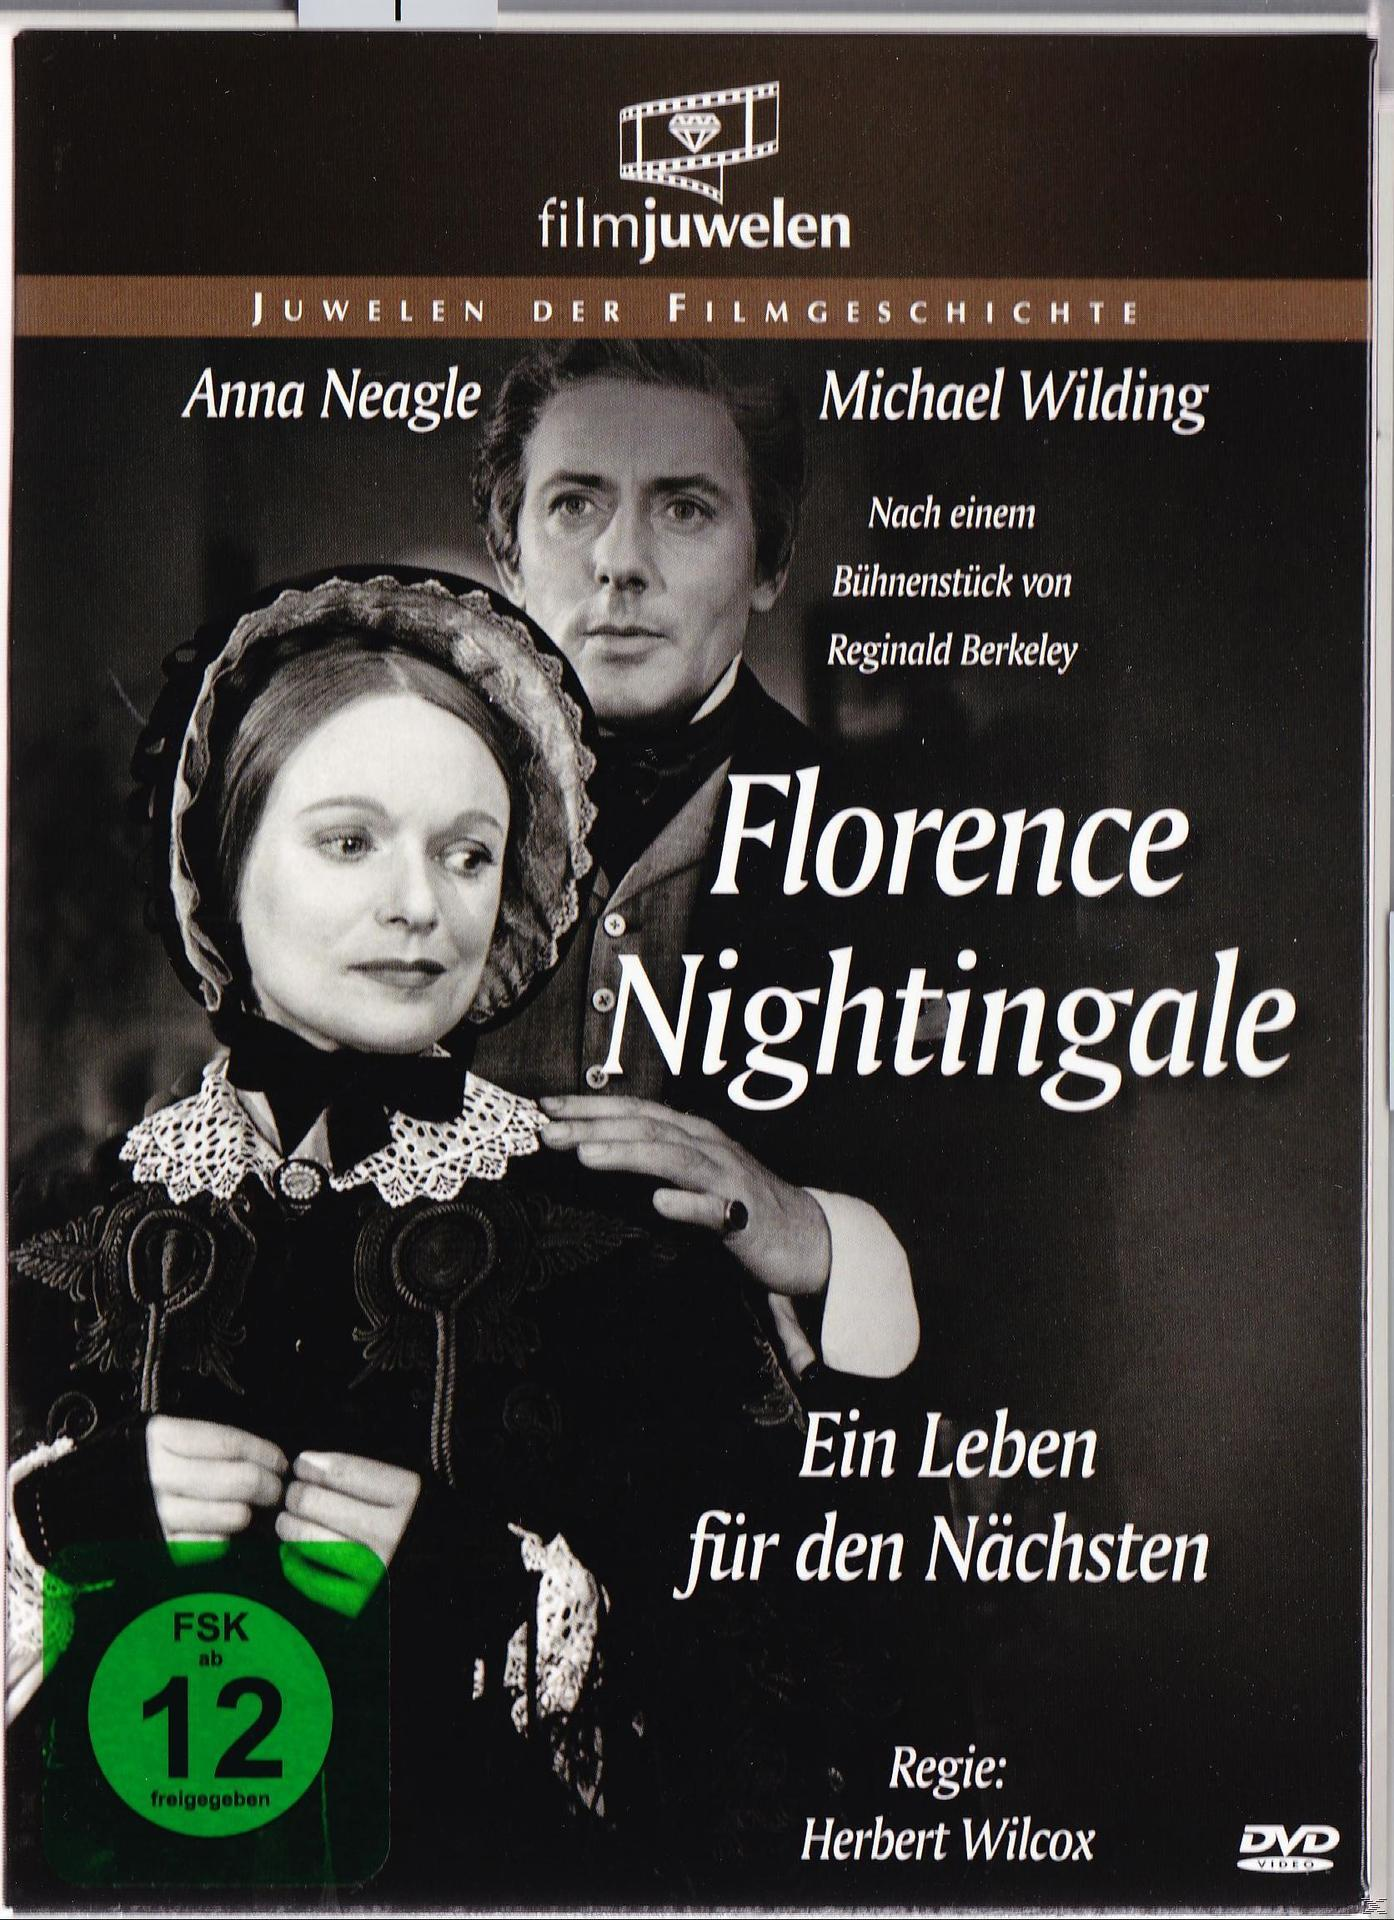 FLORENCE NIGHTINGALE DEN FÜR LEBEN - NÄCHSTEN DVD EIN